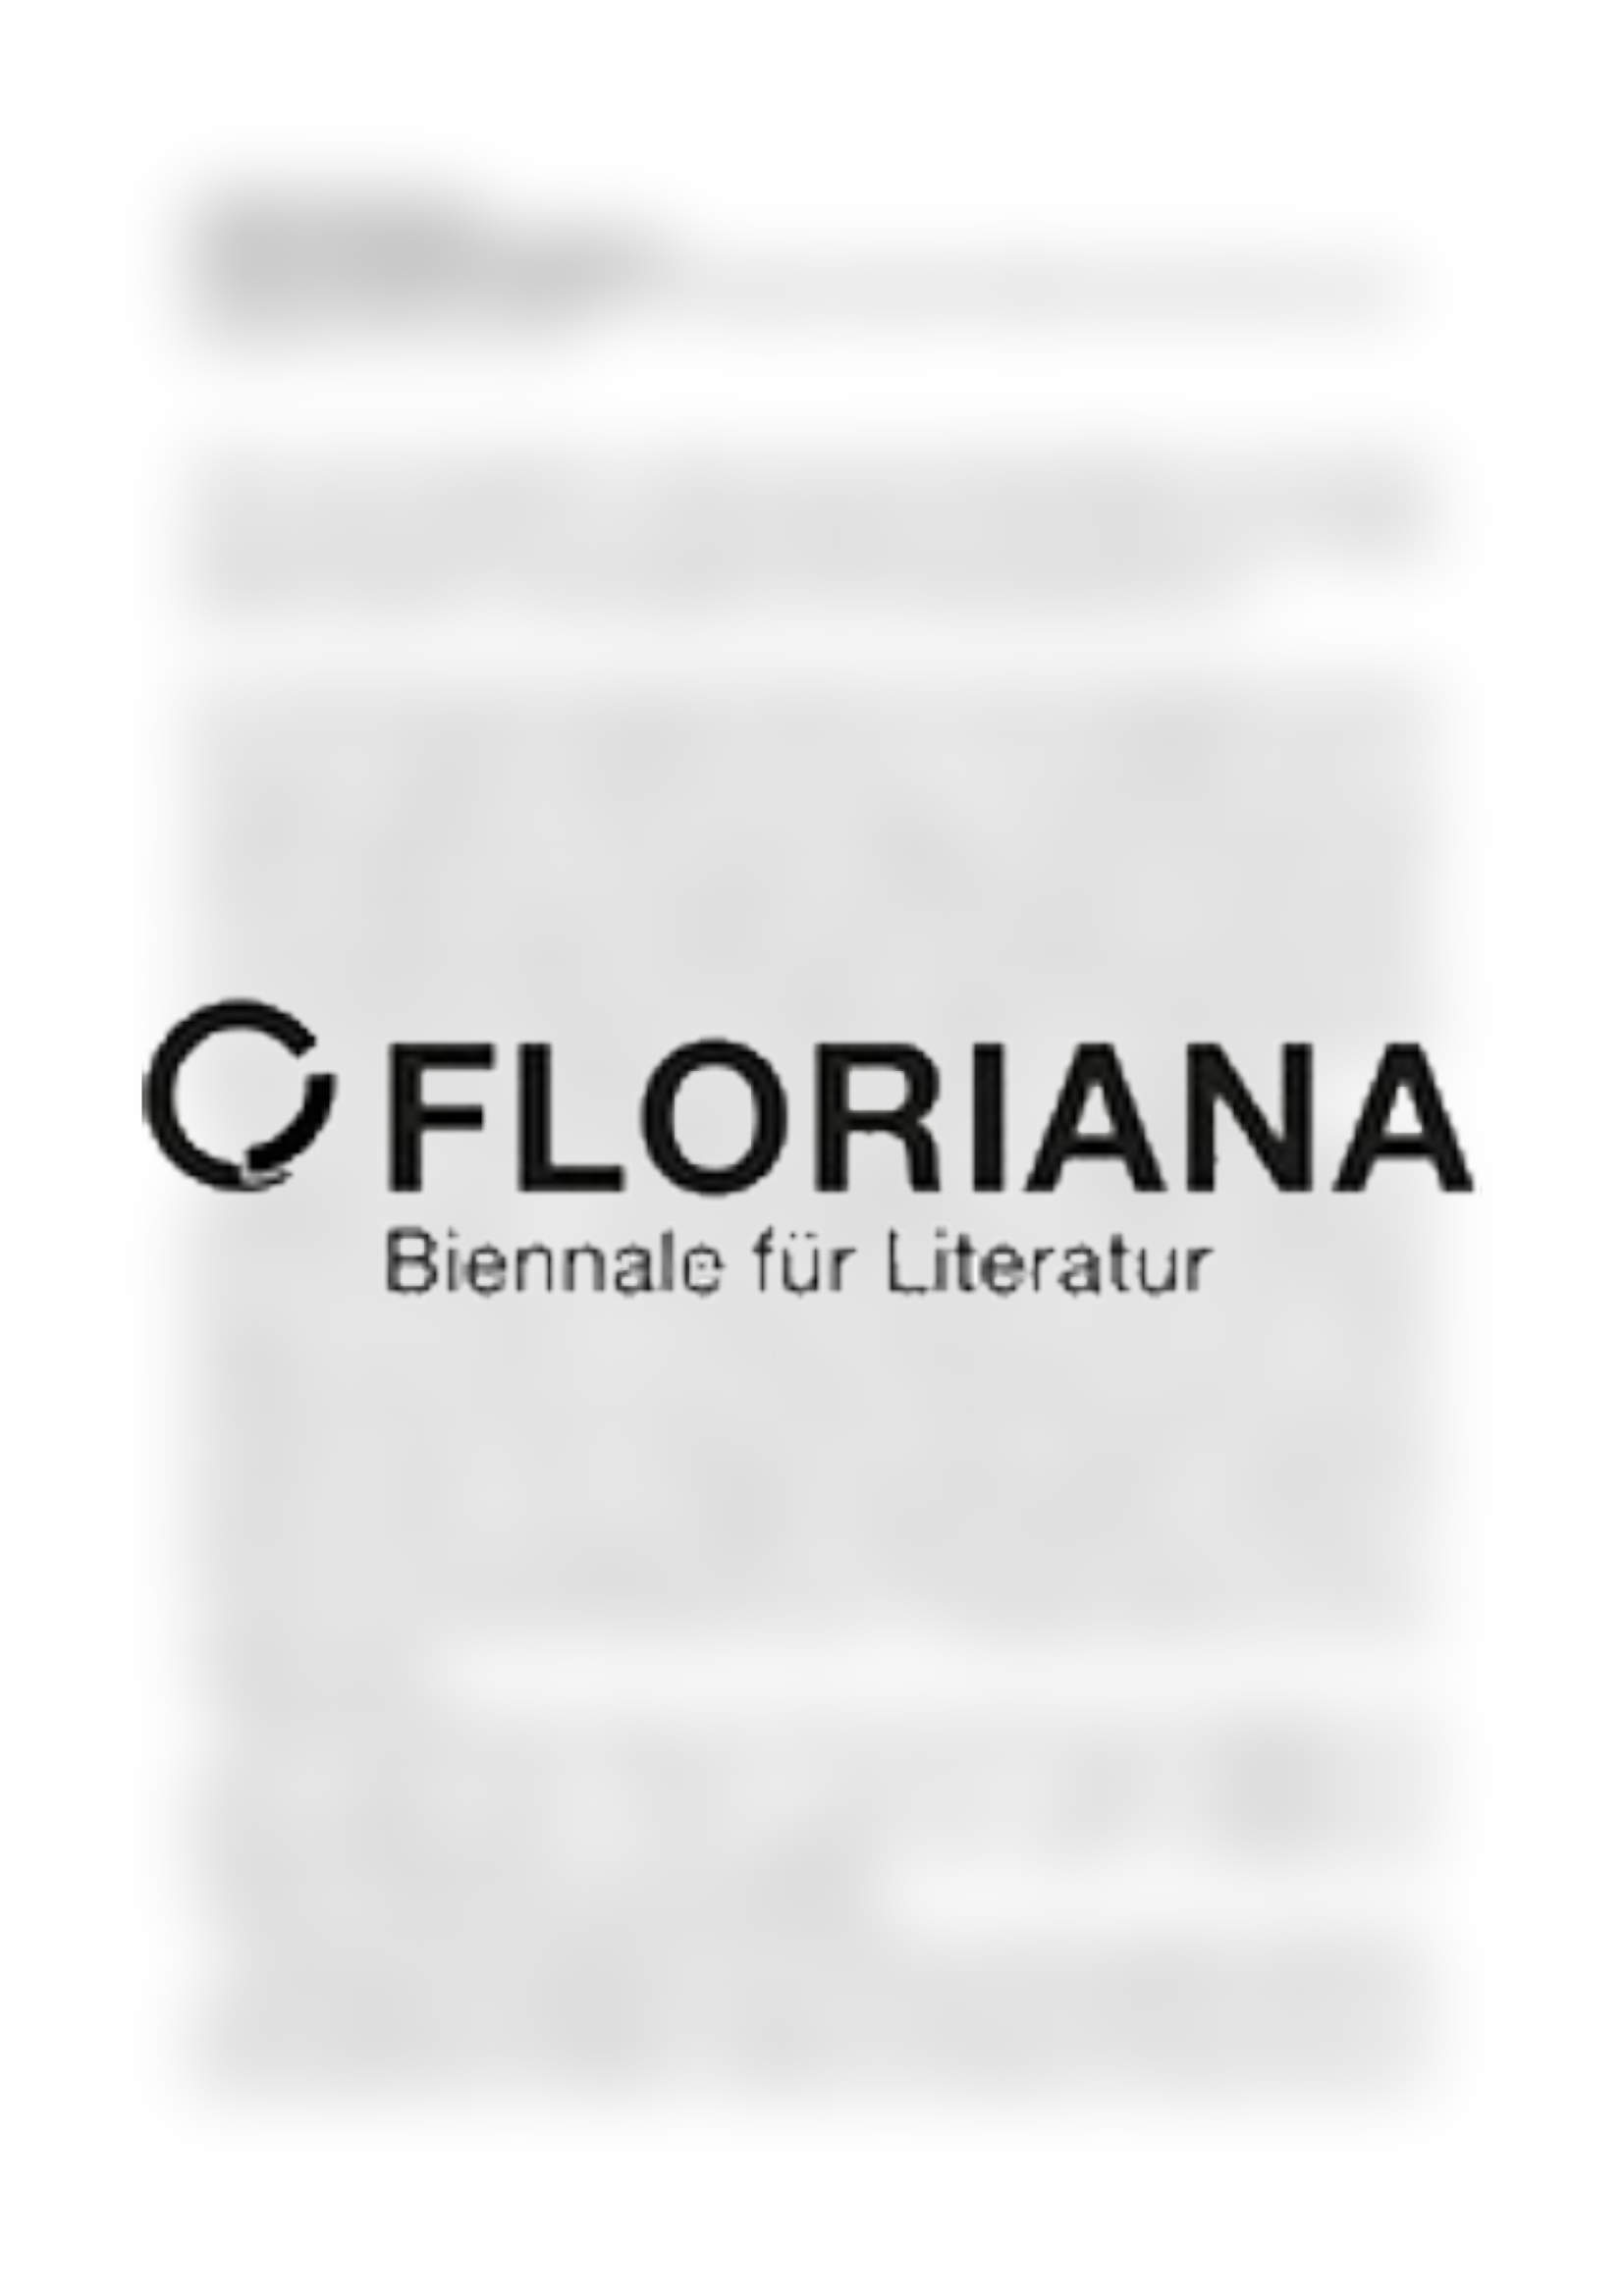 Floriana 2014, Biennale für Literatur